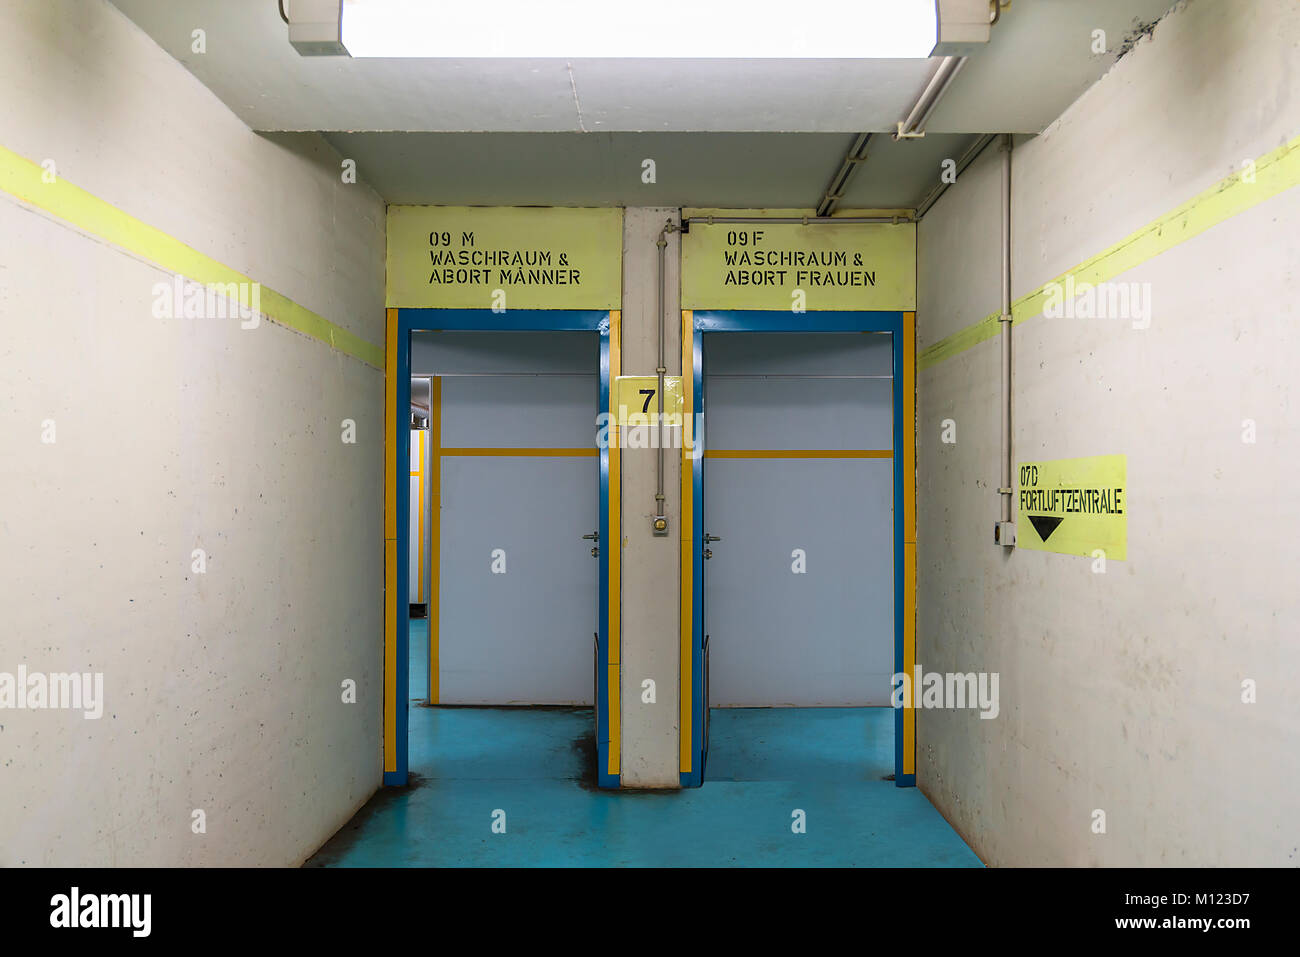 Eingang zu den Toiletten und Waschräume in den stillgelegten nuklearen Bunker, gebaut für 2.400 Menschen in den 70er Jahren unter Stockfoto